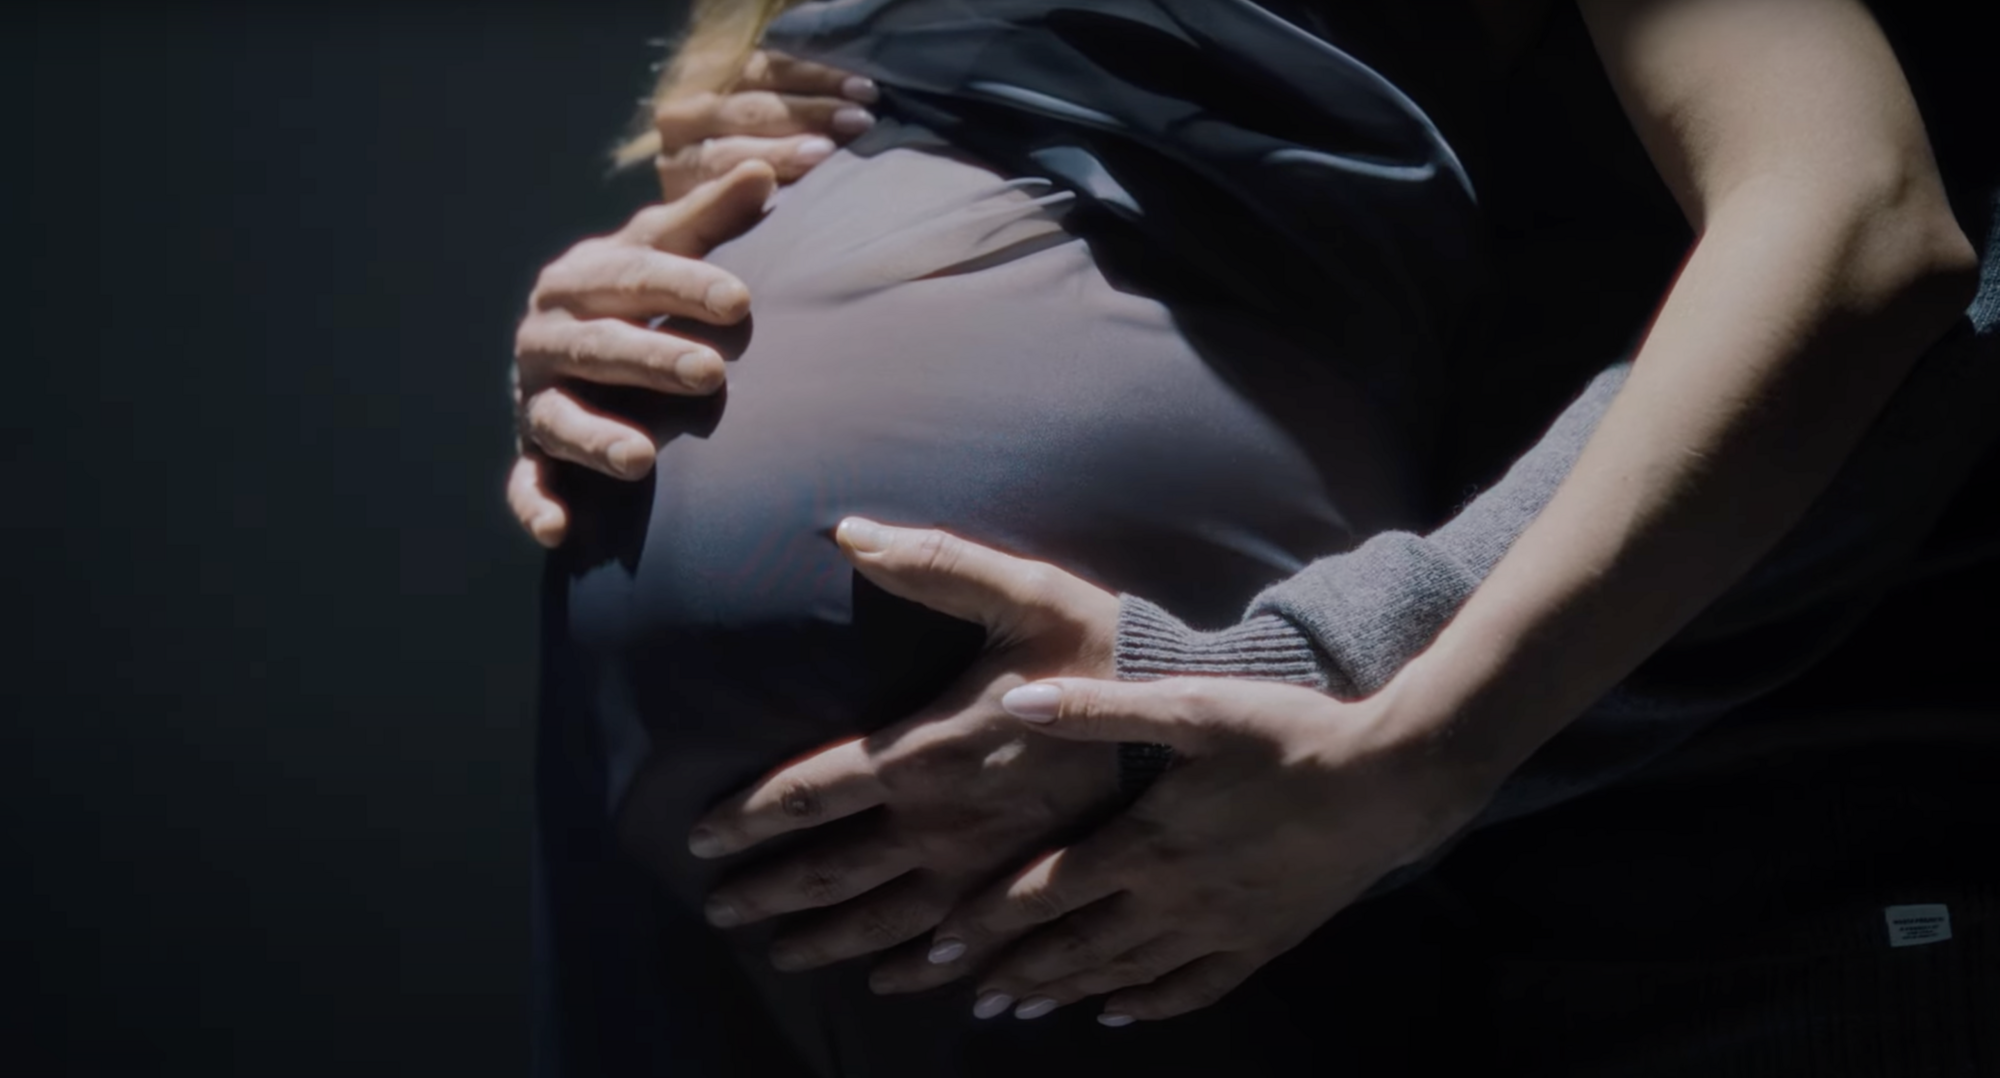 Віталій Козловський показав у новому кліпі "Рубіж" свою вагітну дружину і випадково розсекретив її імʼя. Відео